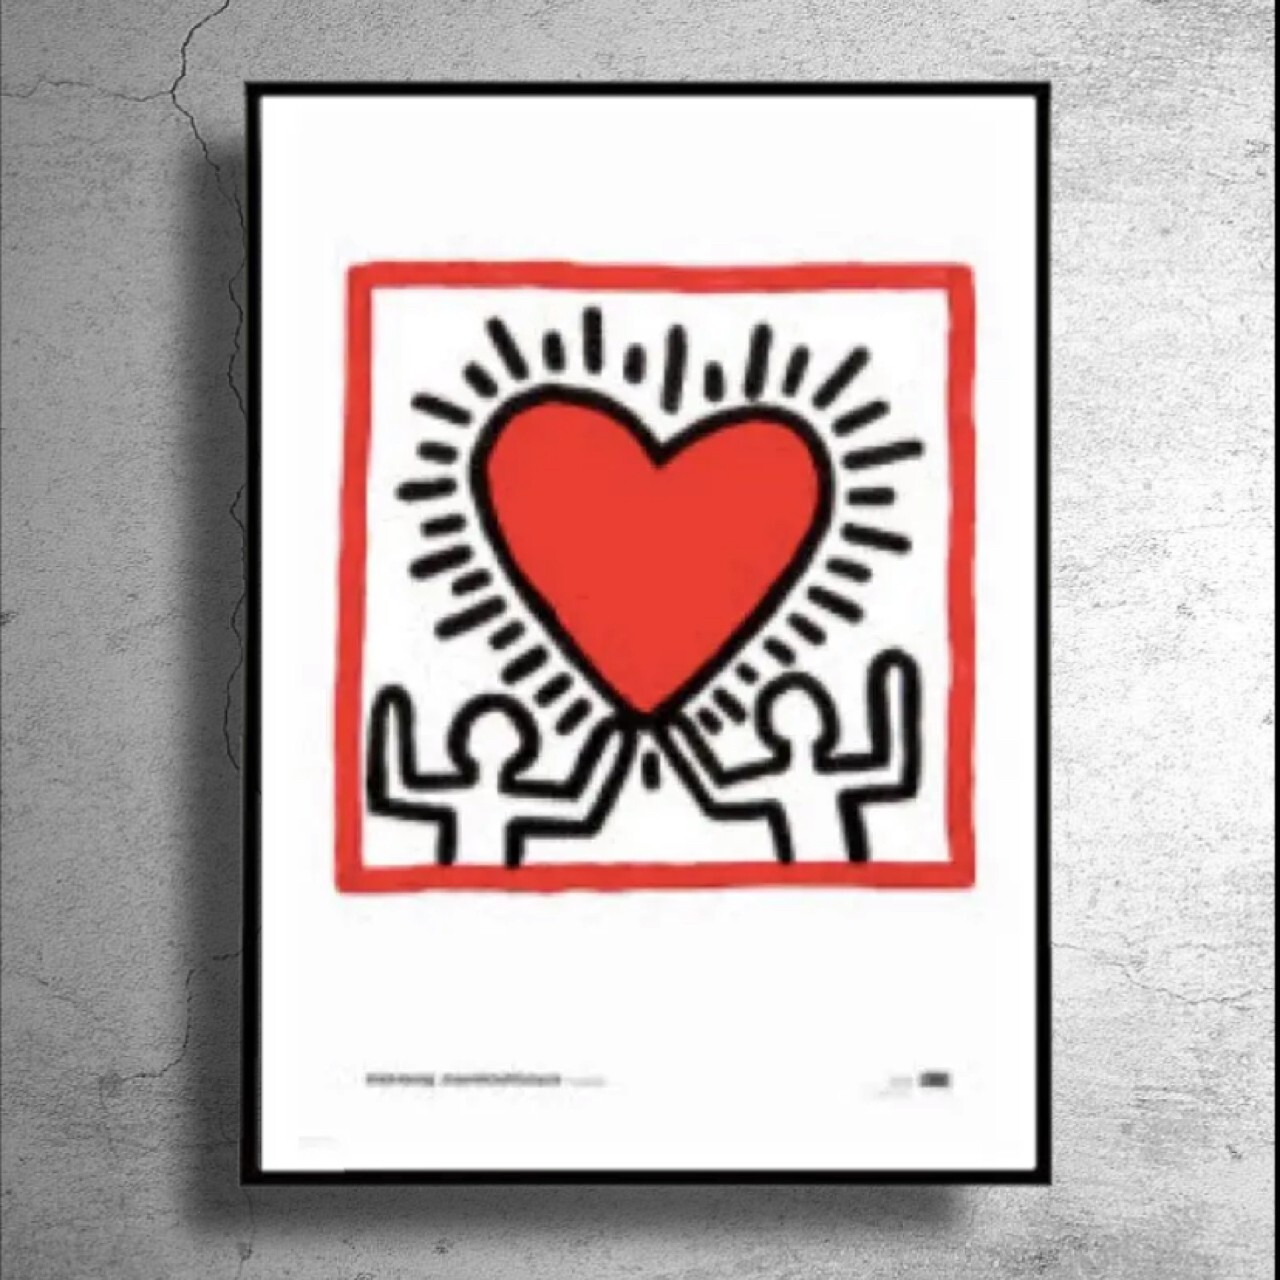 オーストラリア限定 現代美術家 Keith Haring キース ヘリング 日本未流通ポスター コンテンポラリーアートe 特殊ポスターショップ Sooner Or Later